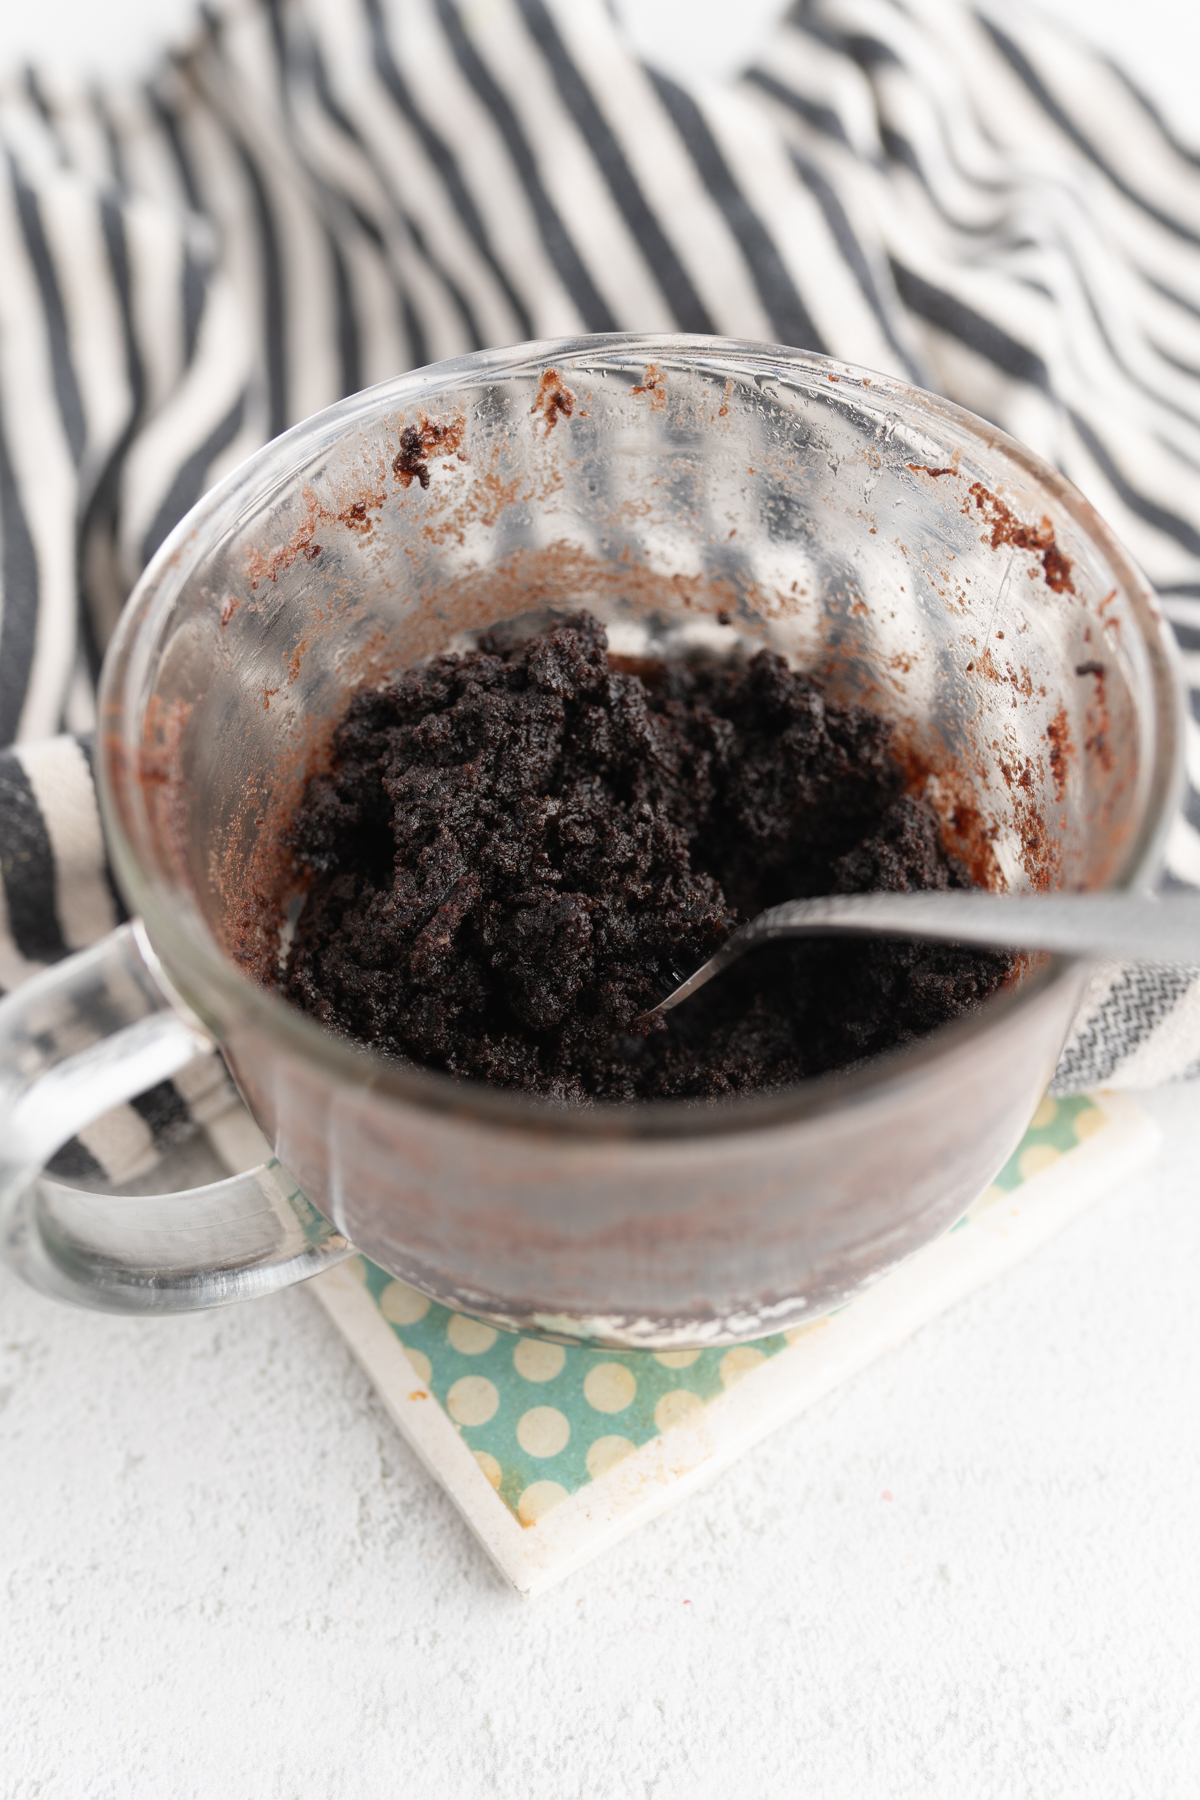 A fork diving into a chocolate mug cake